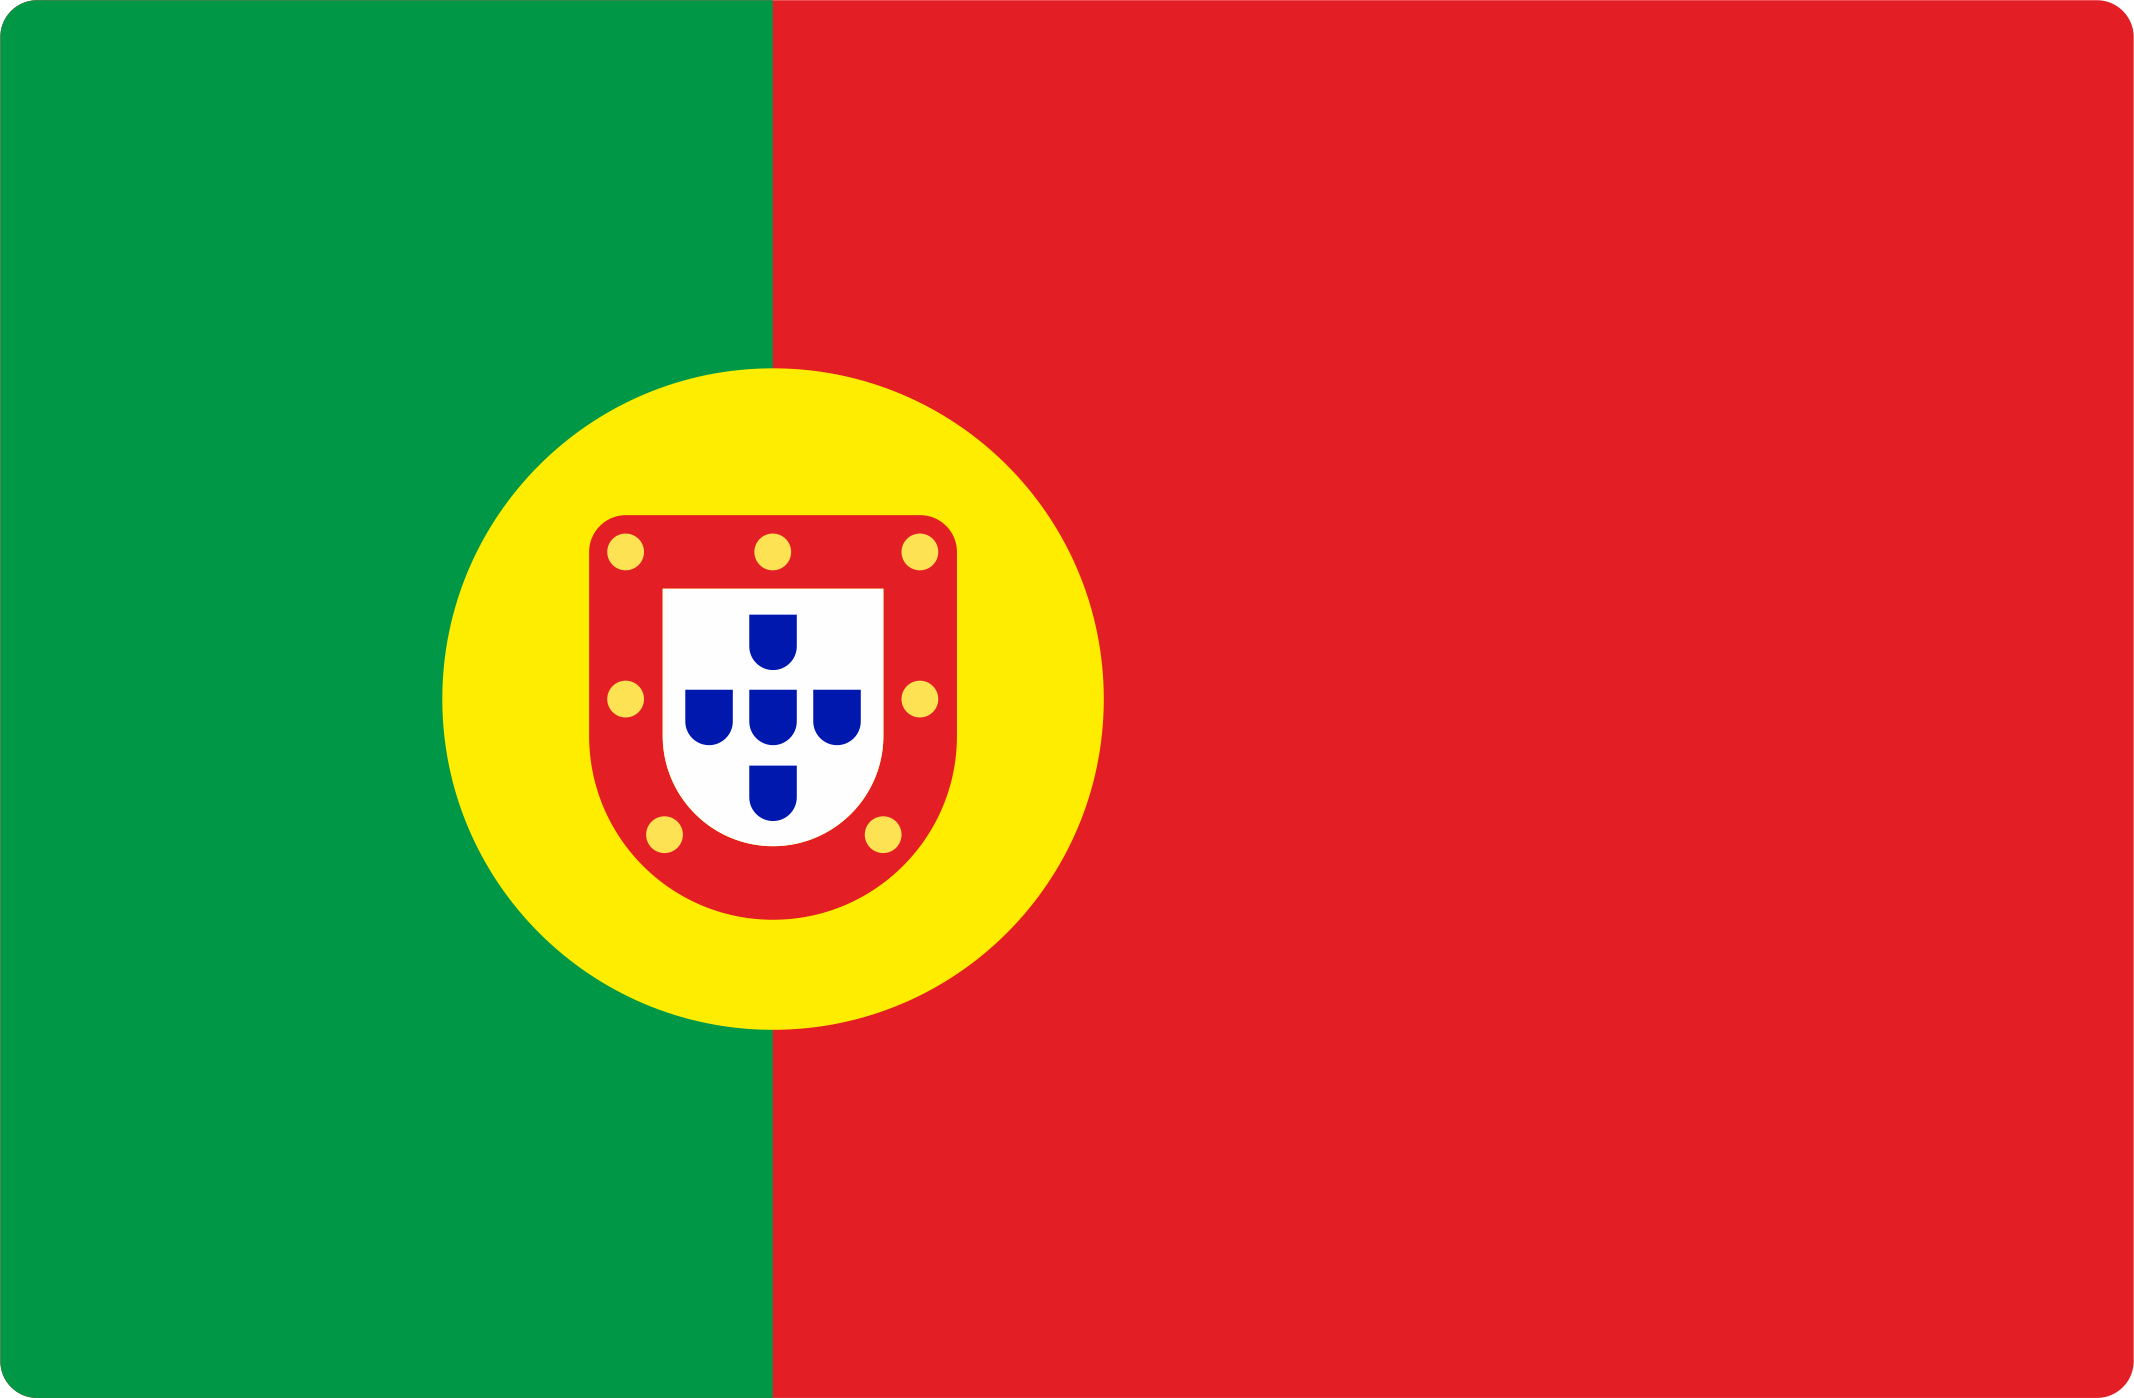 Курсы португальского языка